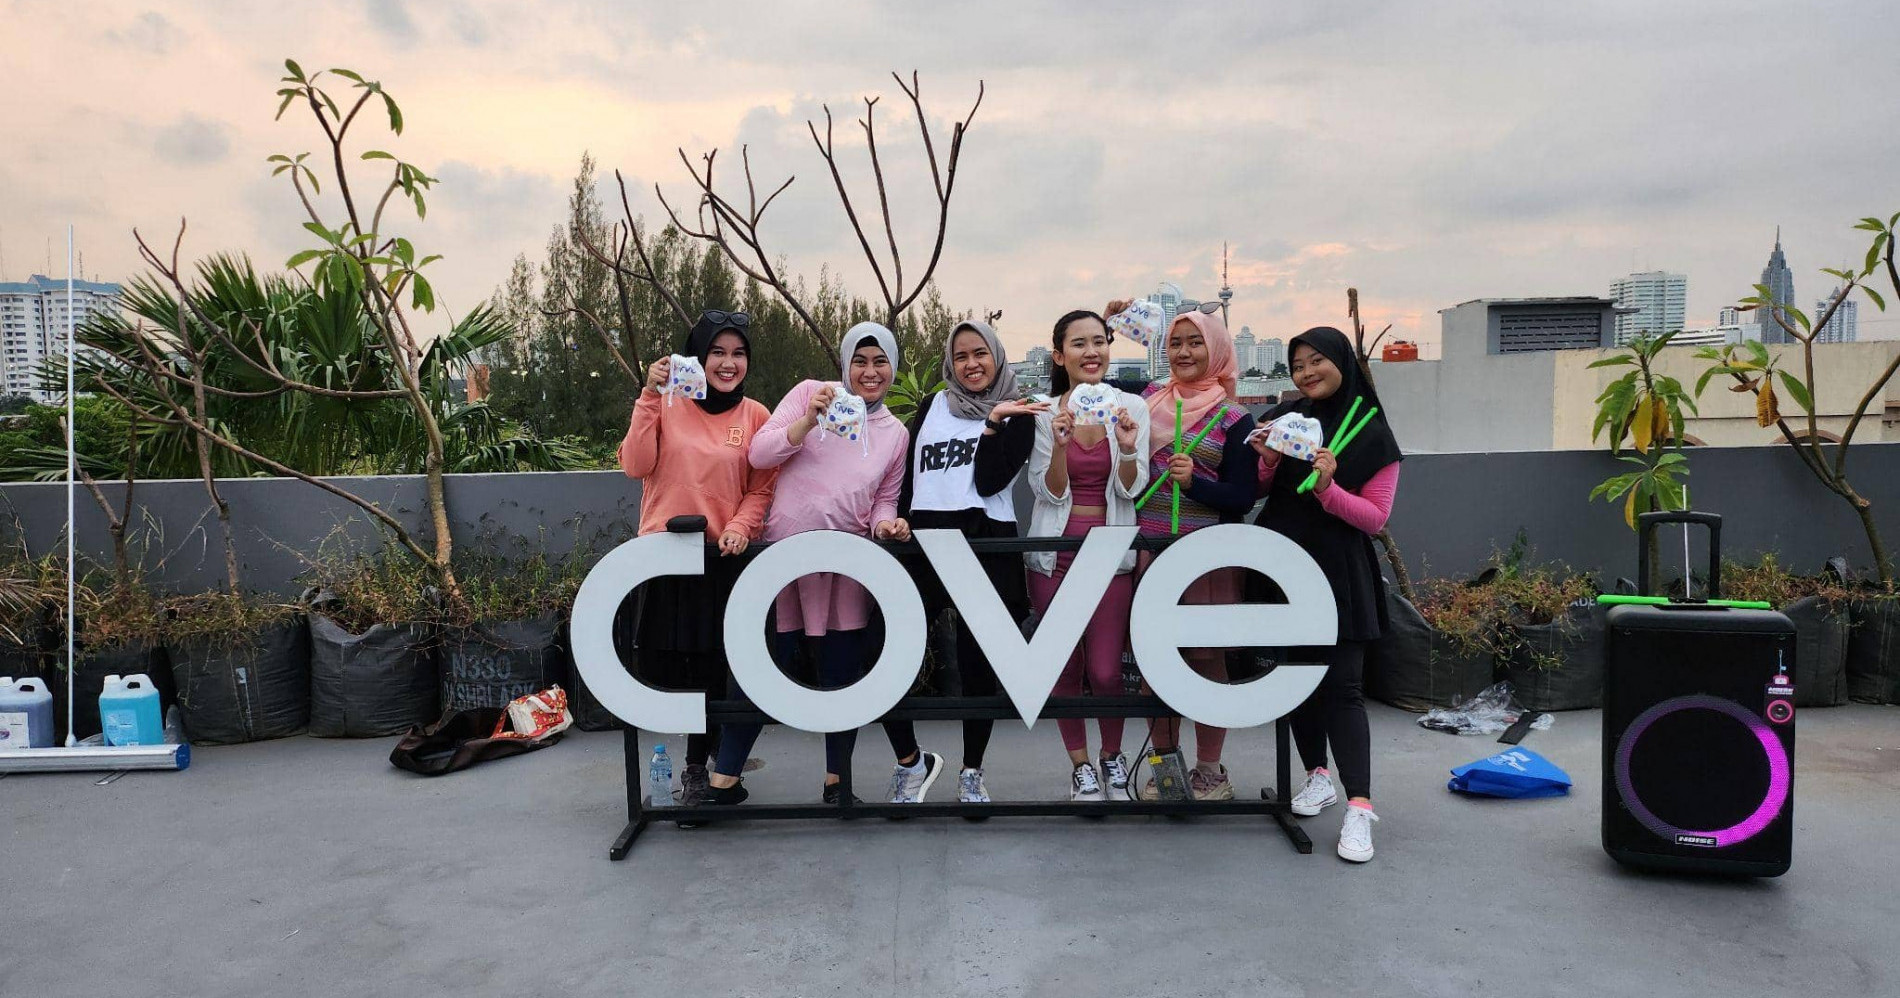 Cove sebagai communal living yang bisa jadi rekomendasi terbaik untuk kamu - Sumber Gambar: Cove